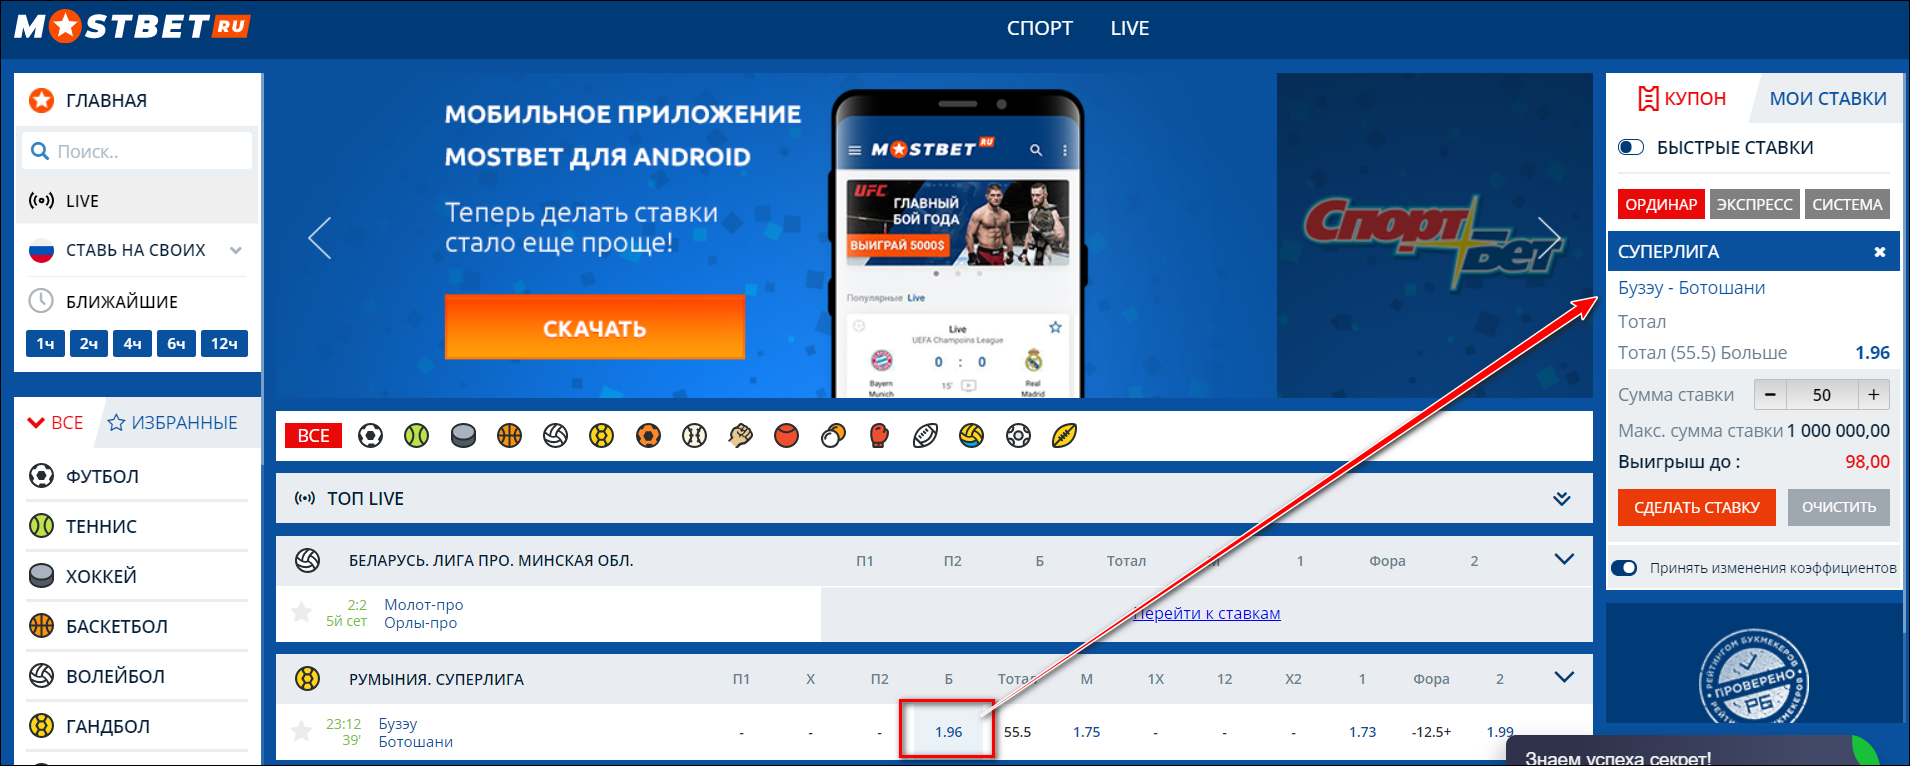 Мостбет сейчас www mostbet android ru штрафы игра казино без регистрации бесплатно вулкан